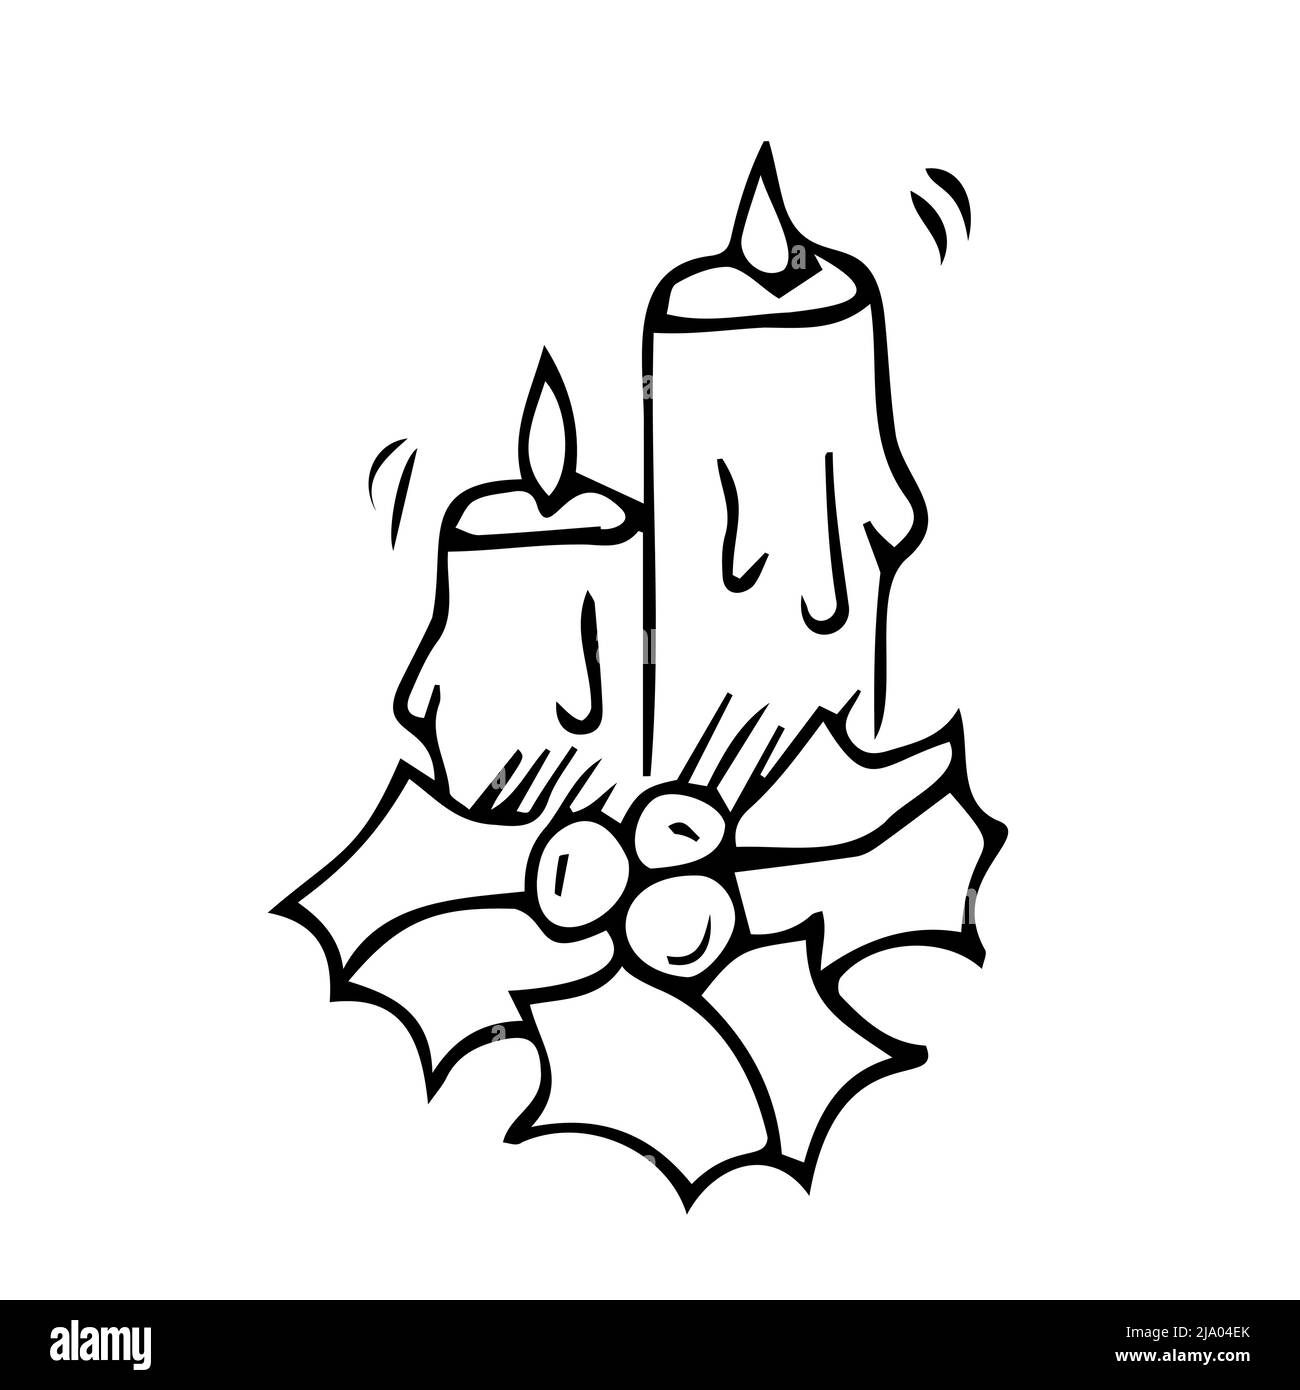 Kerzen und Stechpalme - Vektor-lineare Illustration für die Färbung. Gliederung. Paar Kerzen und Stechpalme immergrün Symbol von Weihnachten zum Färben. Stock Vektor